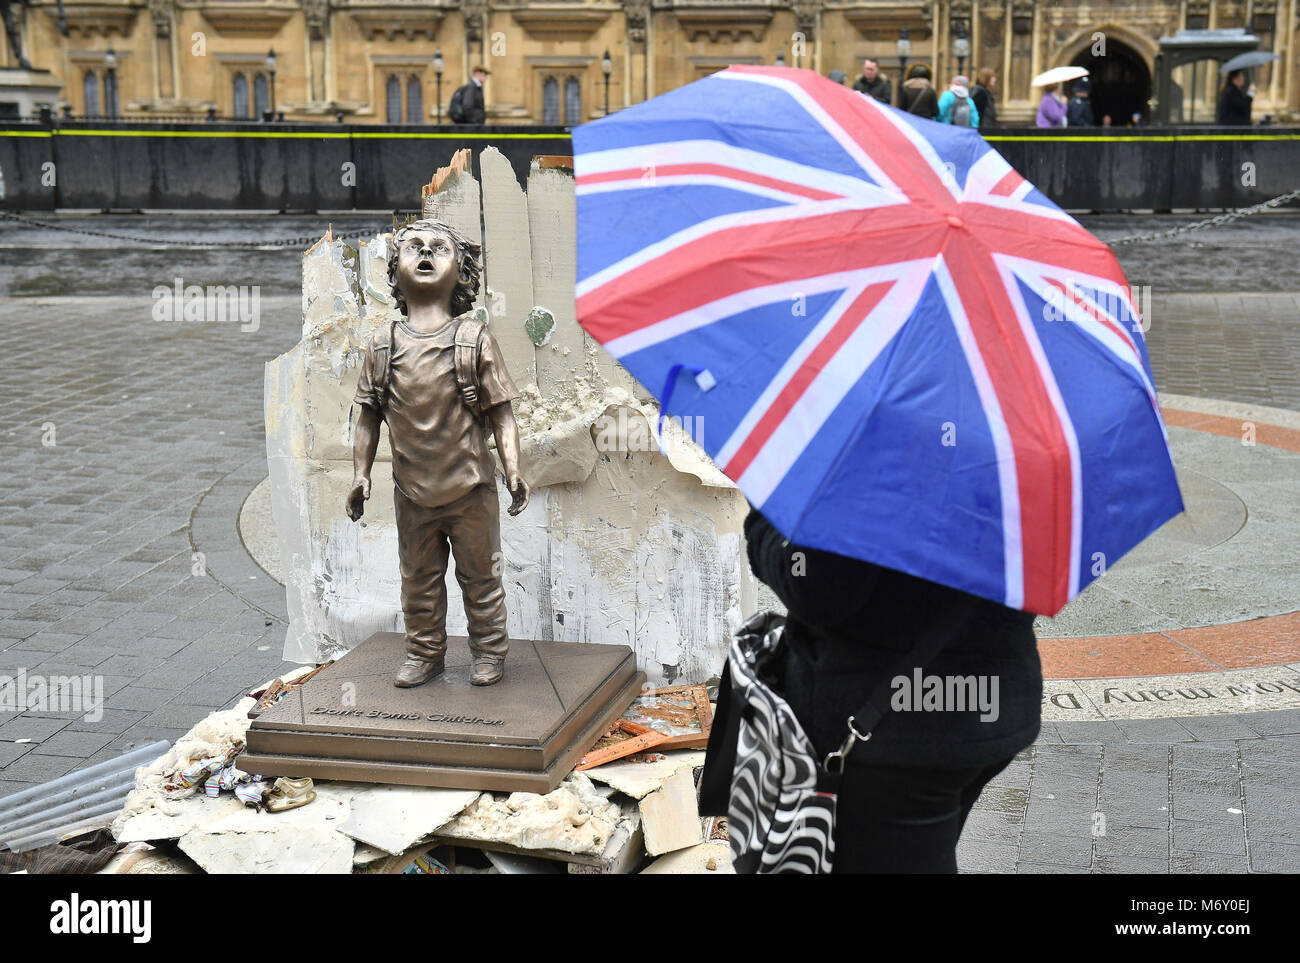 Una statua a grandezza naturale di un bambino posto da salvare i bambini accanto al case del Parlamento a Londra per richiamare l attenzione sulla guerra in Yemen davanti alla visita della corona saudita principe per il Regno Unito. Foto Stock